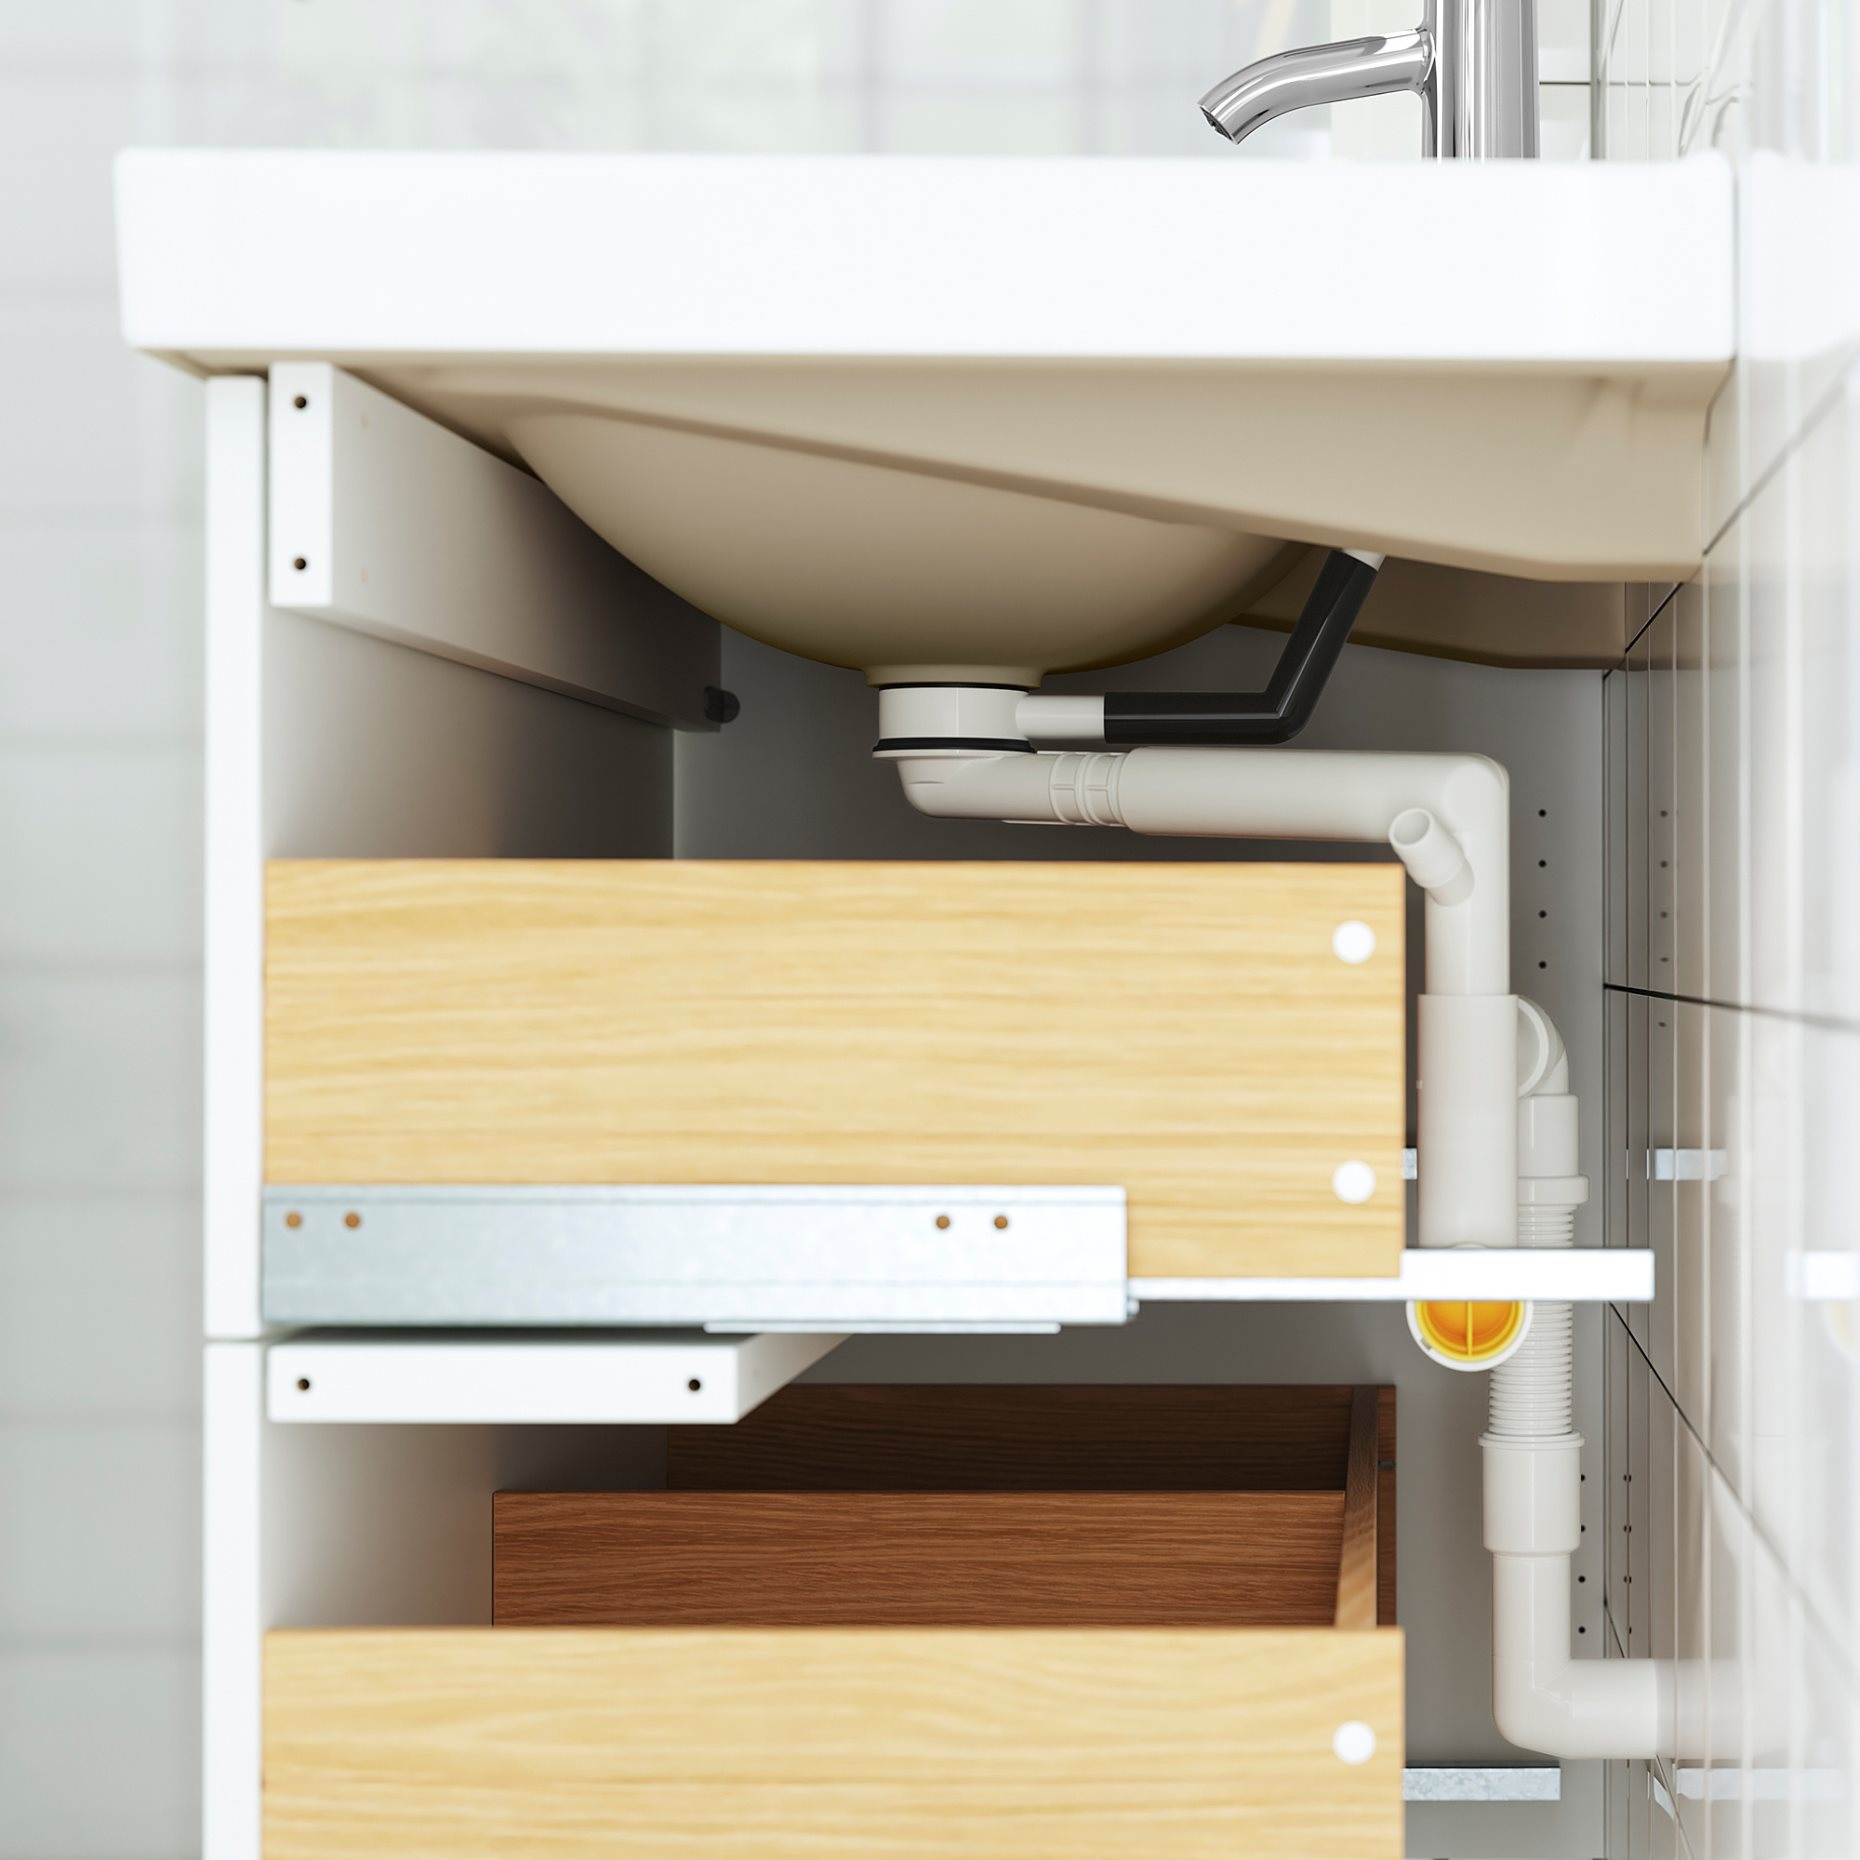 TANNFORSEN/TORNVIKEN, wash-stand with drawers/wash-basin/tap, 82x49x79 cm, 395.217.30